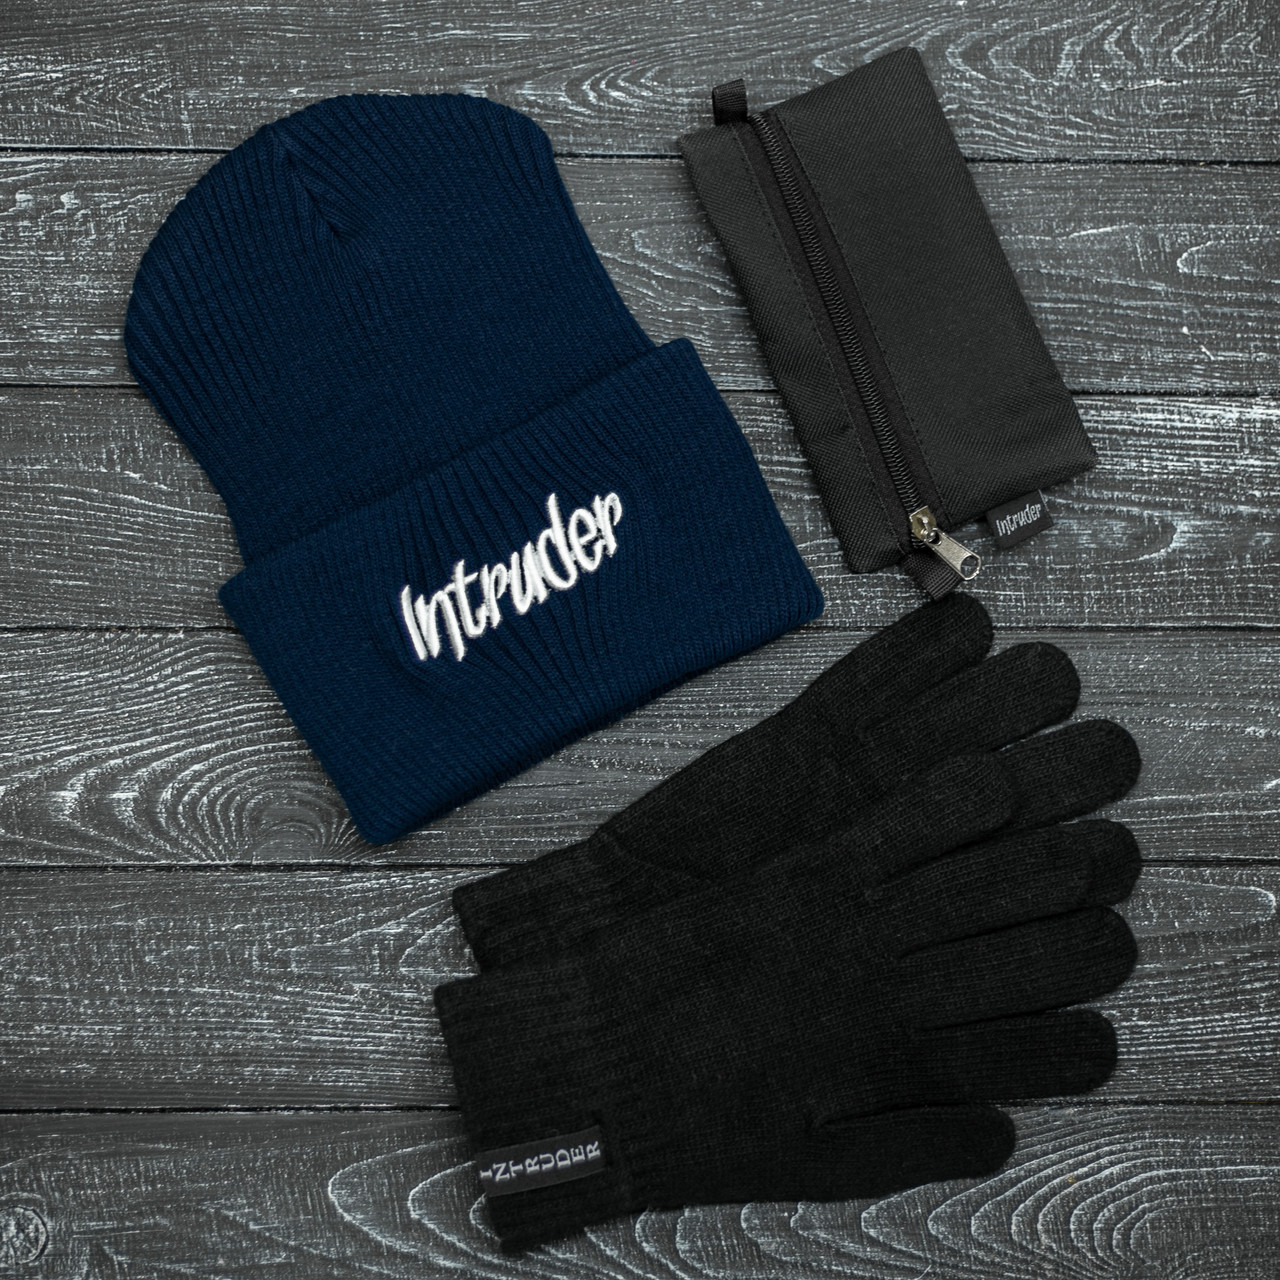 Мужская | Женская шапка Intruder синяя зимняя big logo + перчатки черные, зимний комплект